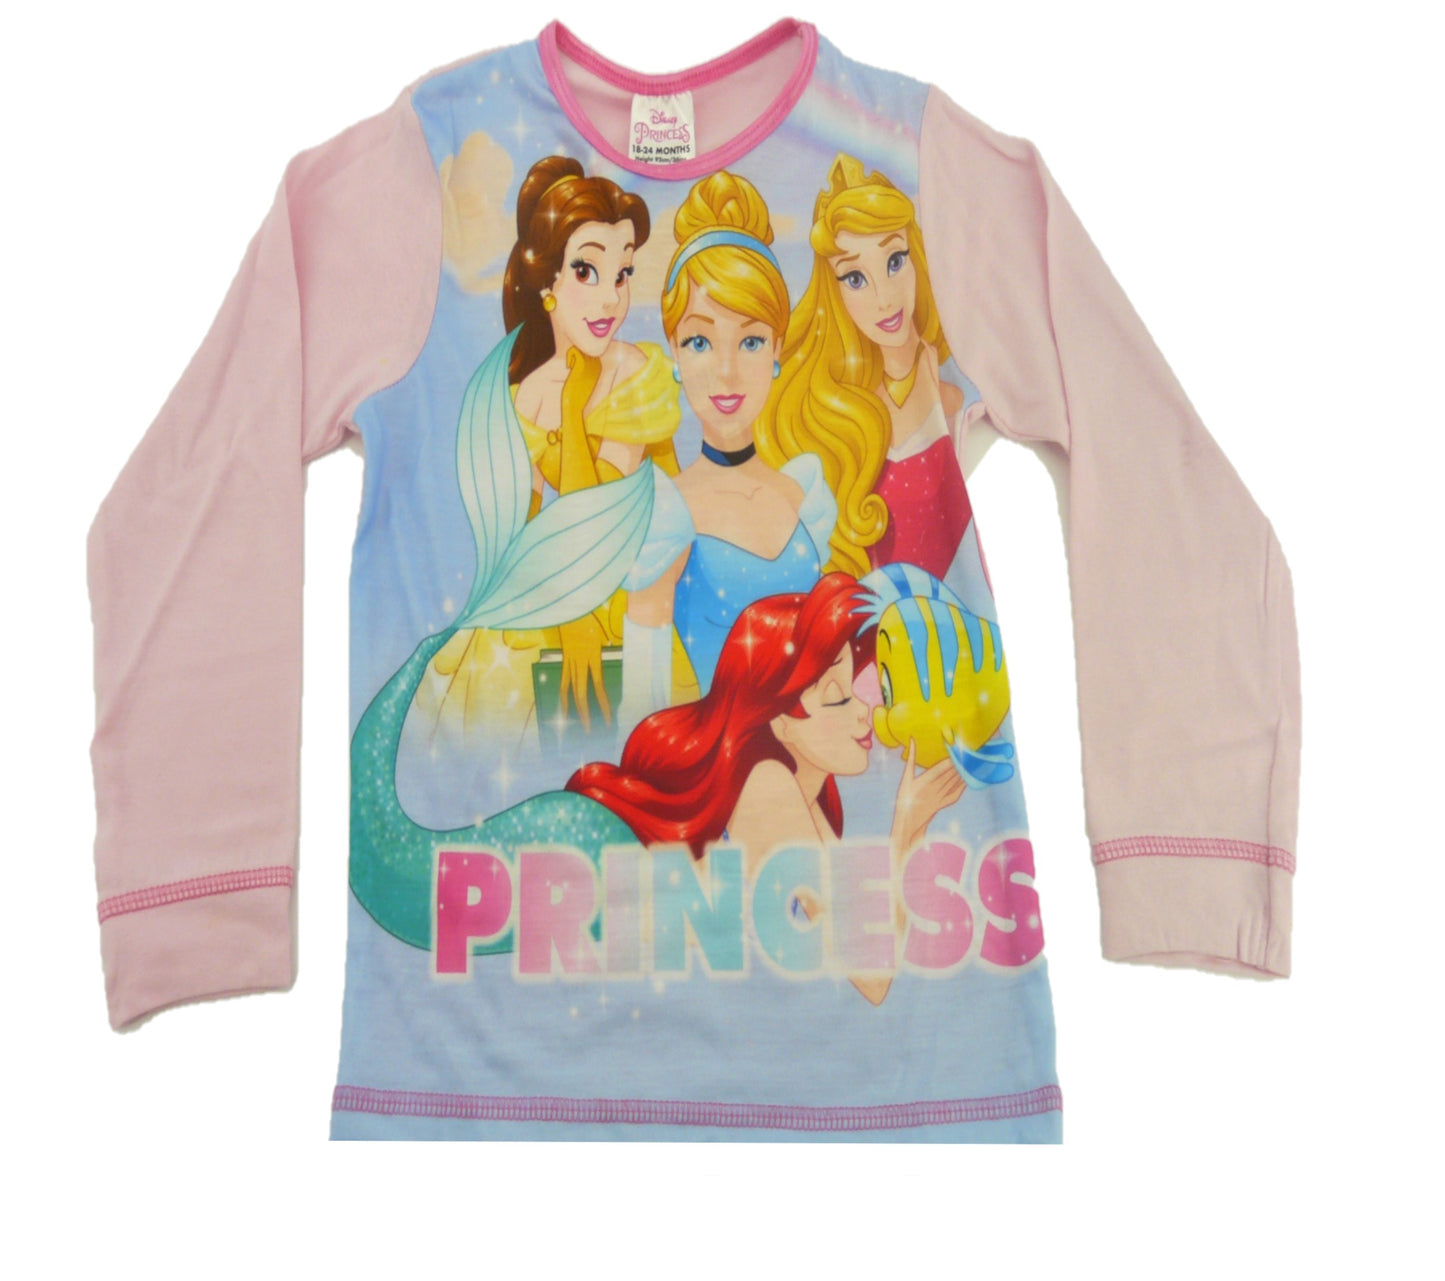 Disney Princess "Princess" Girl's Pink Pyjamas 18-24 Months